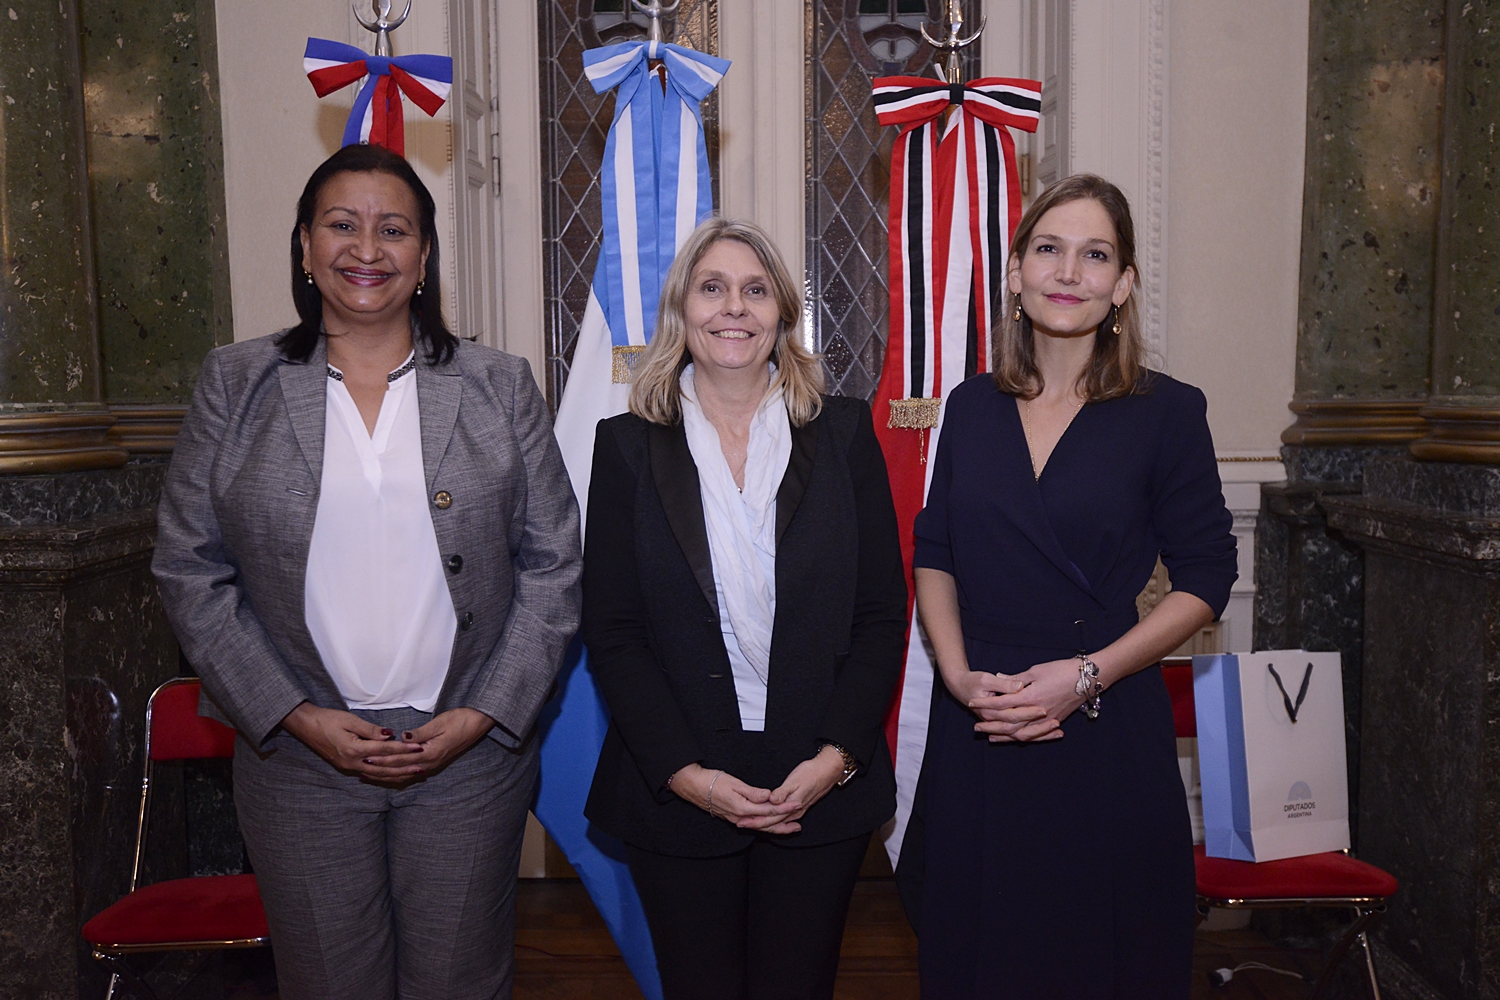 La Diputada Cornelia Schmidt Liermann junto a la Diputada de República Dominicana Annie Báez y la Senadora de Trinidad y Tobago Jennifer Raffoul